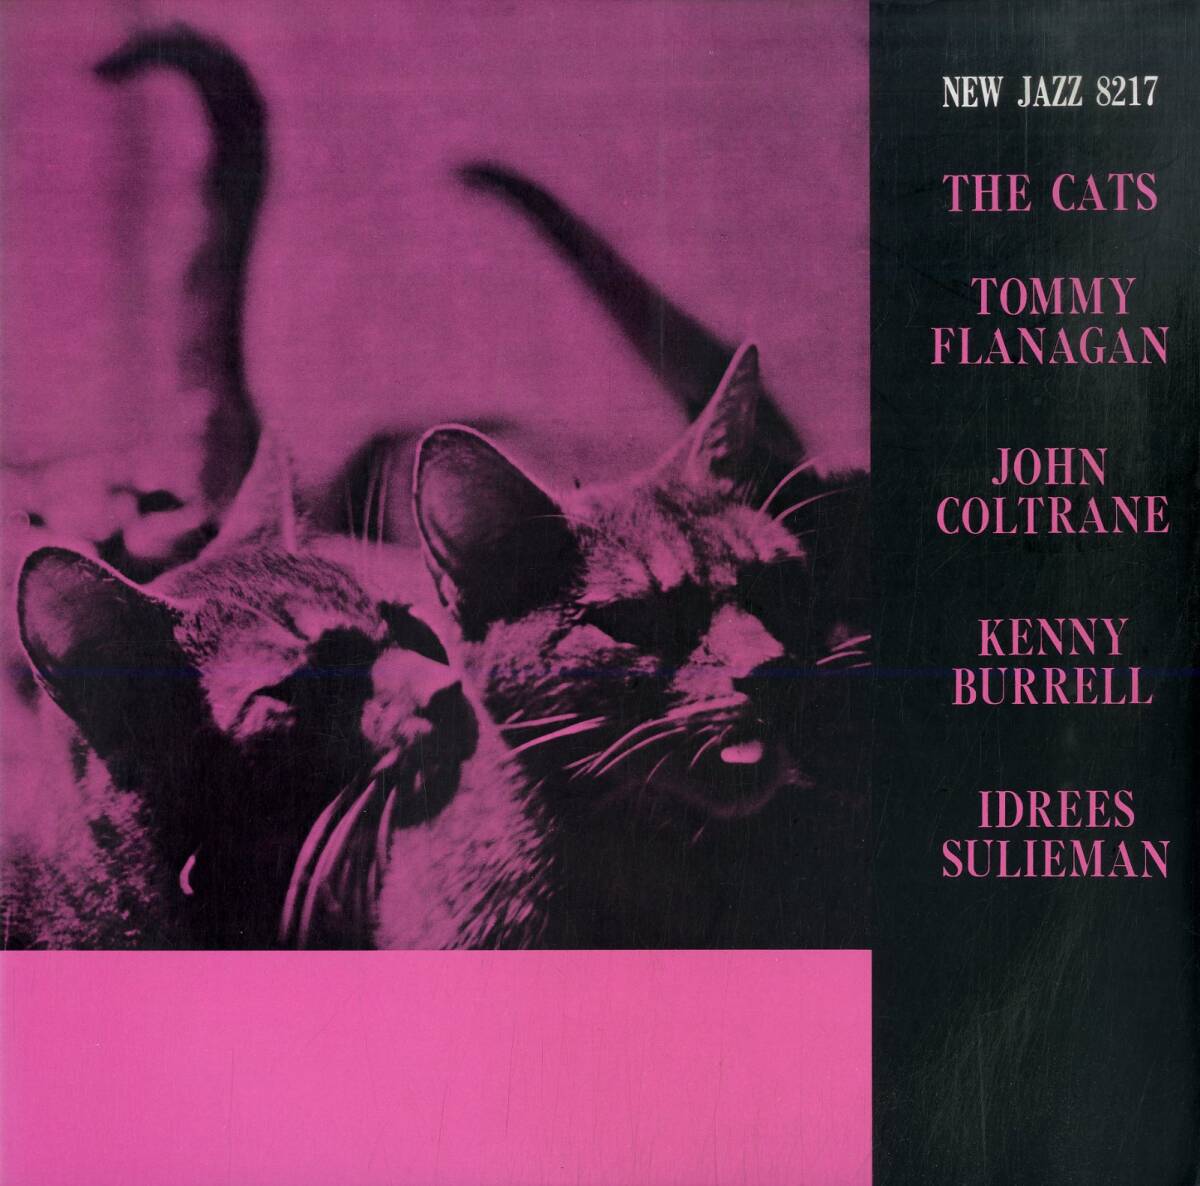 A00590636/LP/トミー・フラナガン & ジョン・コルトレーン「The Cats (1984年・VIJ-239・ハードバップ)」の画像1